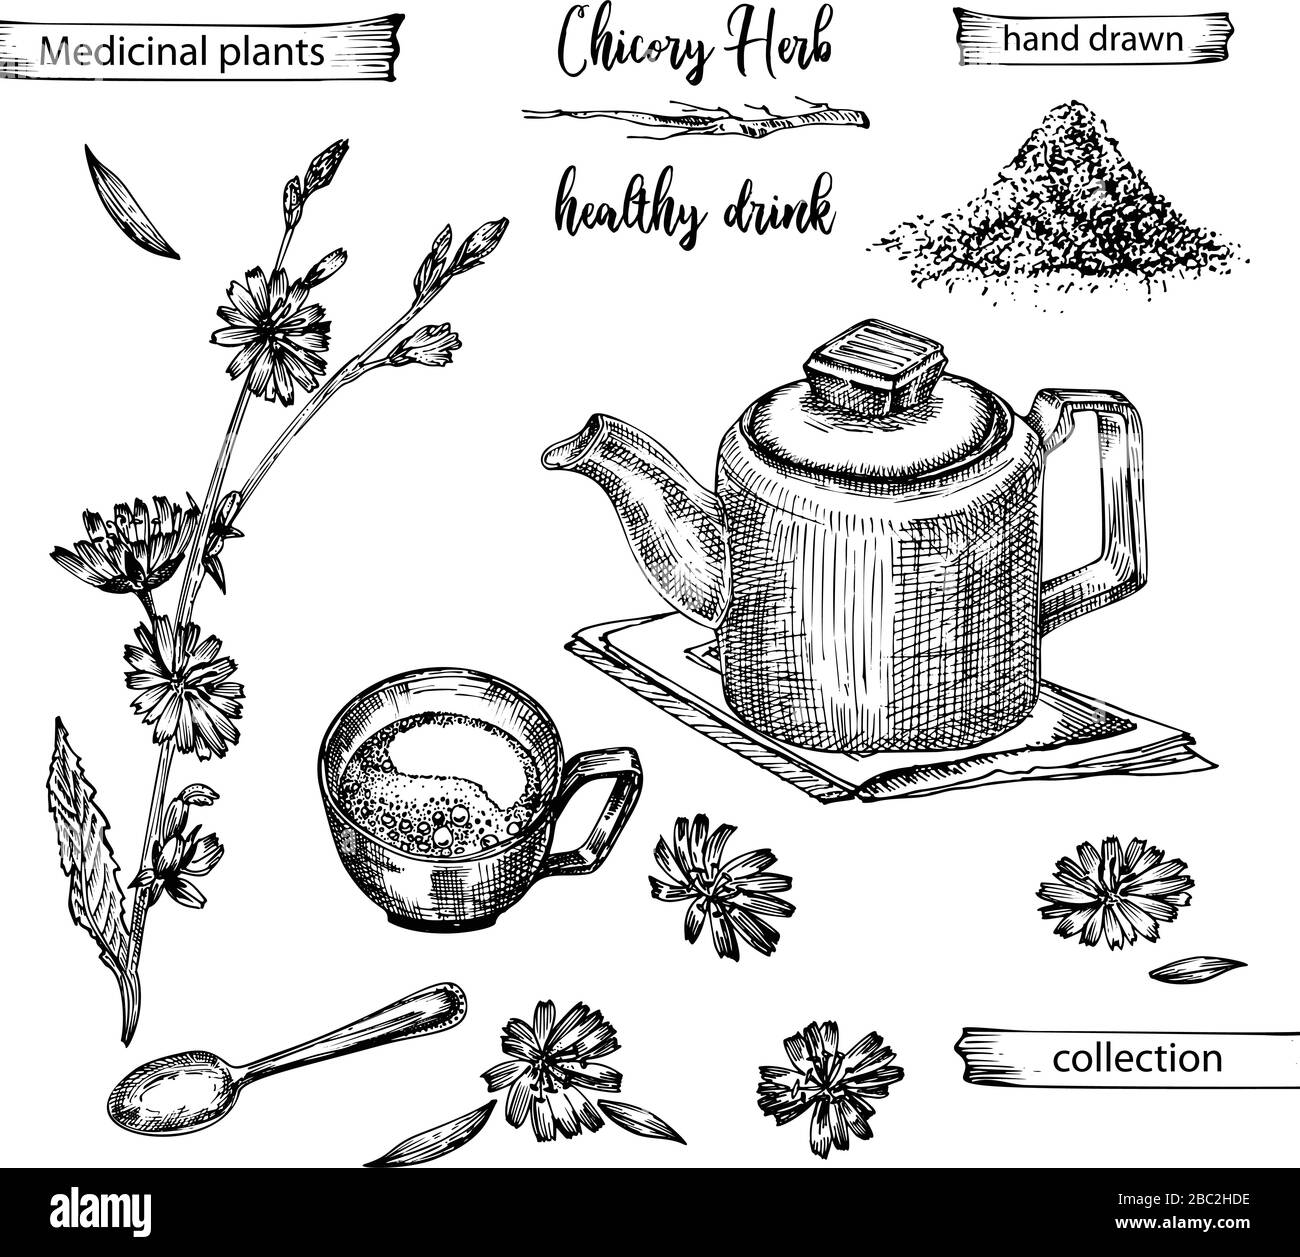 Croquis réaliste à l'encre botanique de racine de chicorée, fleurs, poudre, théière, tasse à thé et cuillère isolés sur fond blanc, collection d'herbes florales Illustration de Vecteur